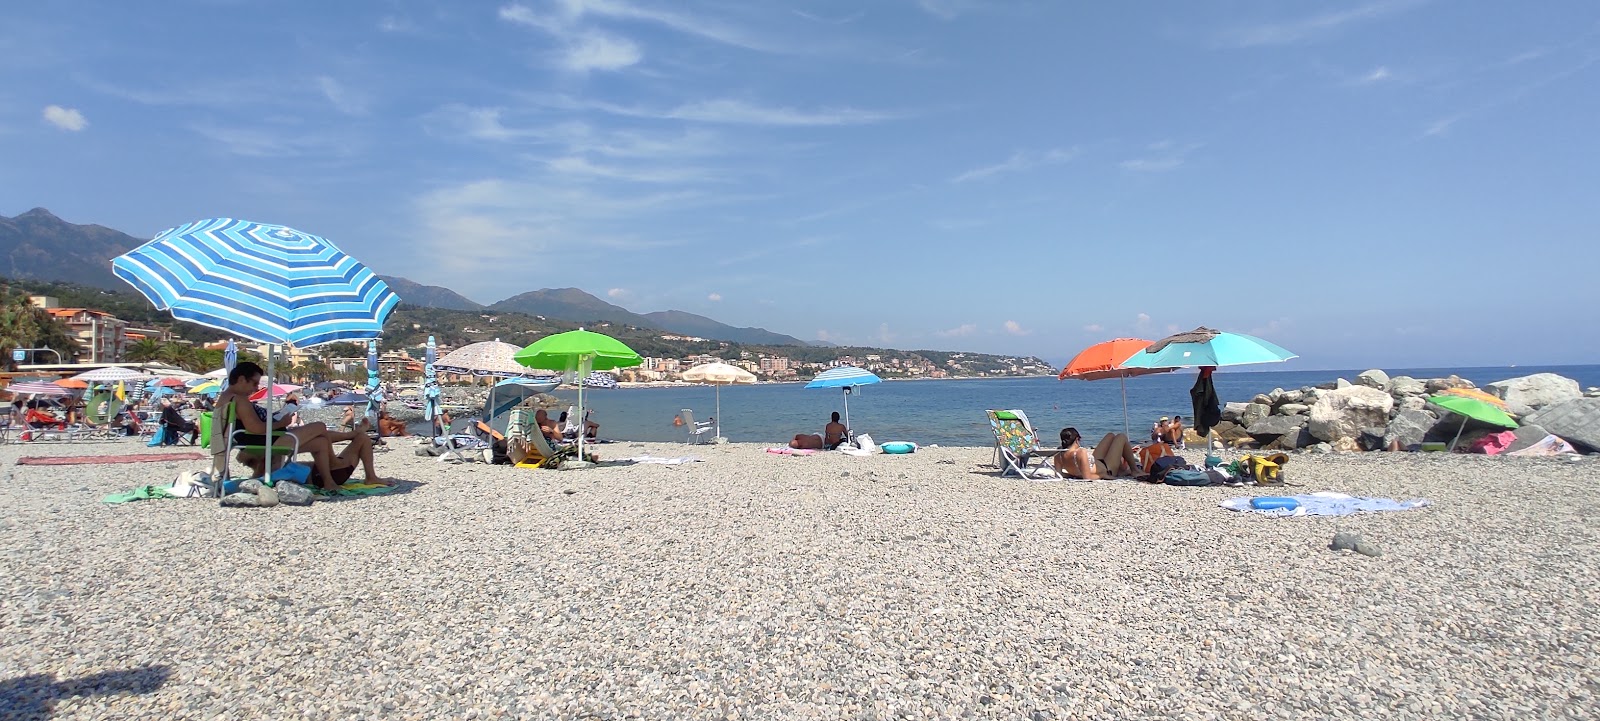 Photo of Spiaggia Libera Carretta Cogoleto with spacious shore